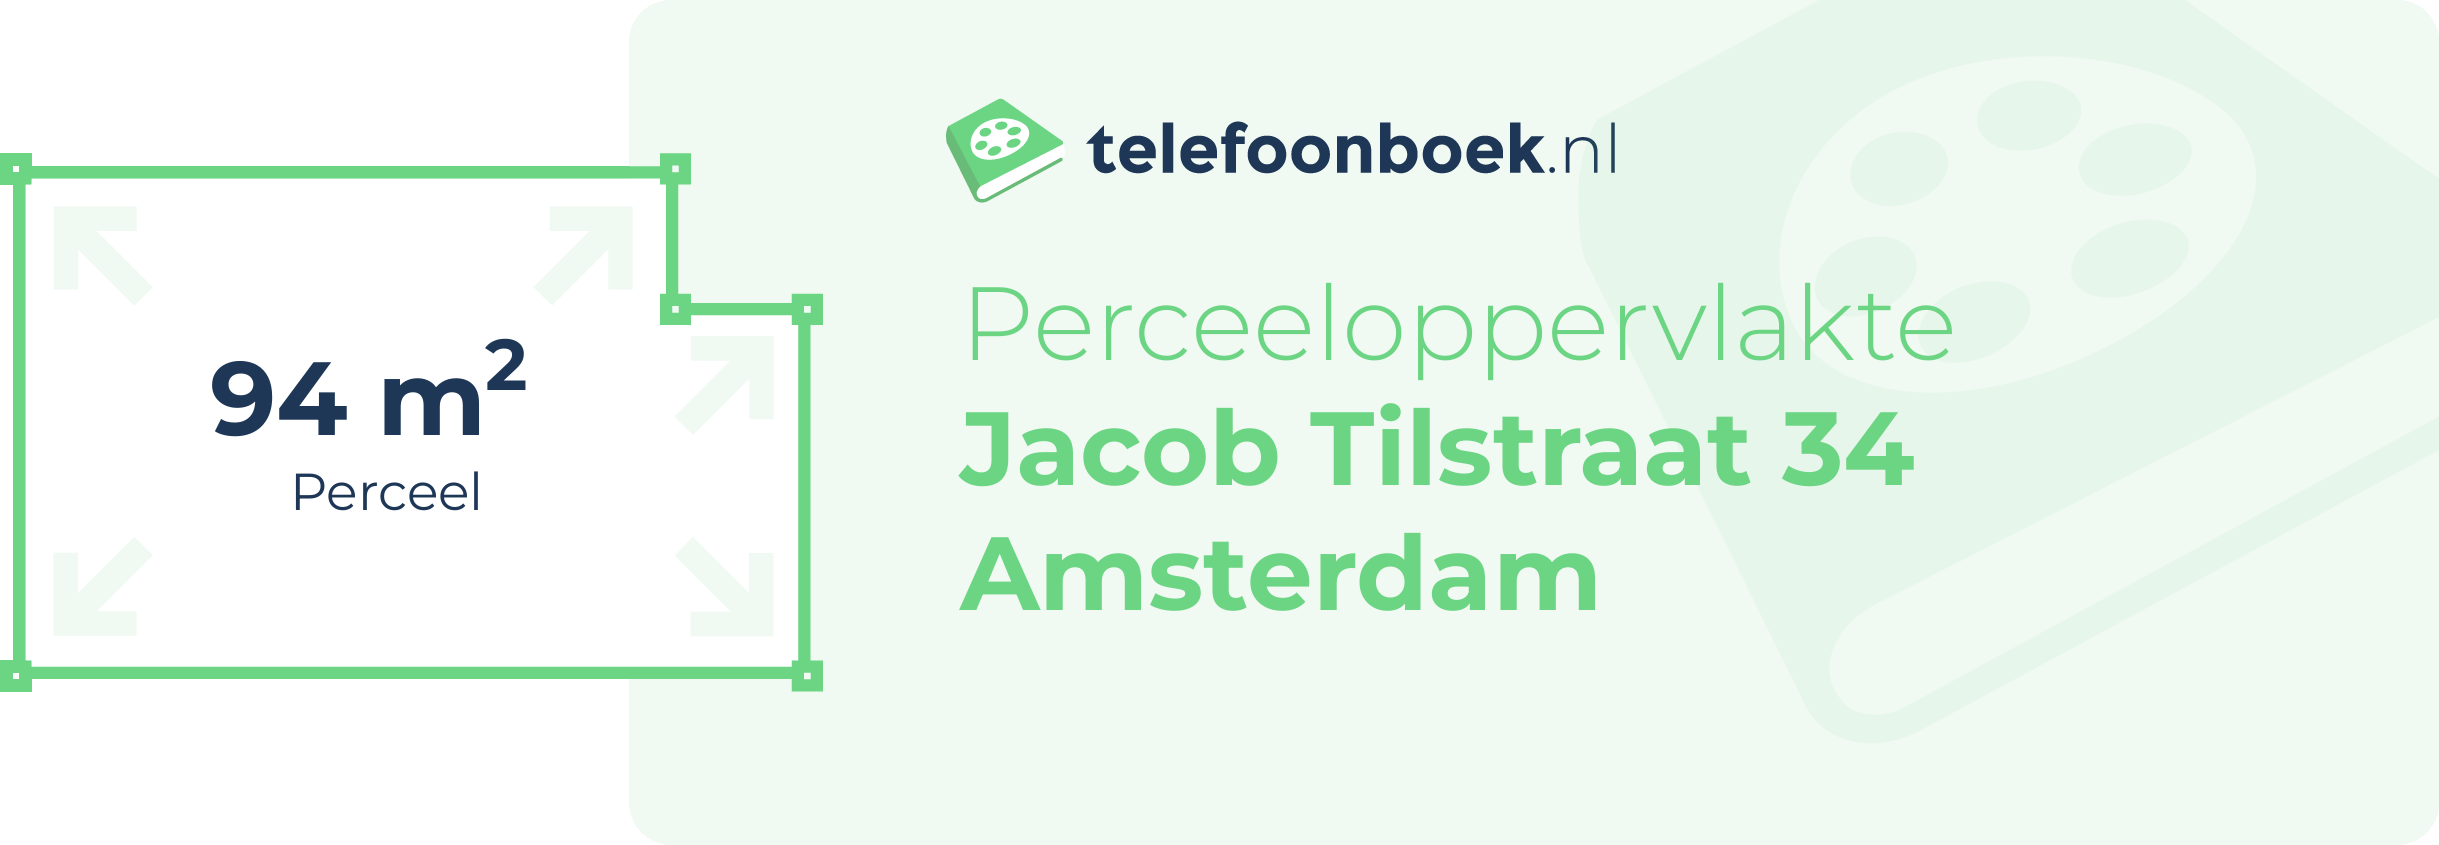 Perceeloppervlakte Jacob Tilstraat 34 Amsterdam